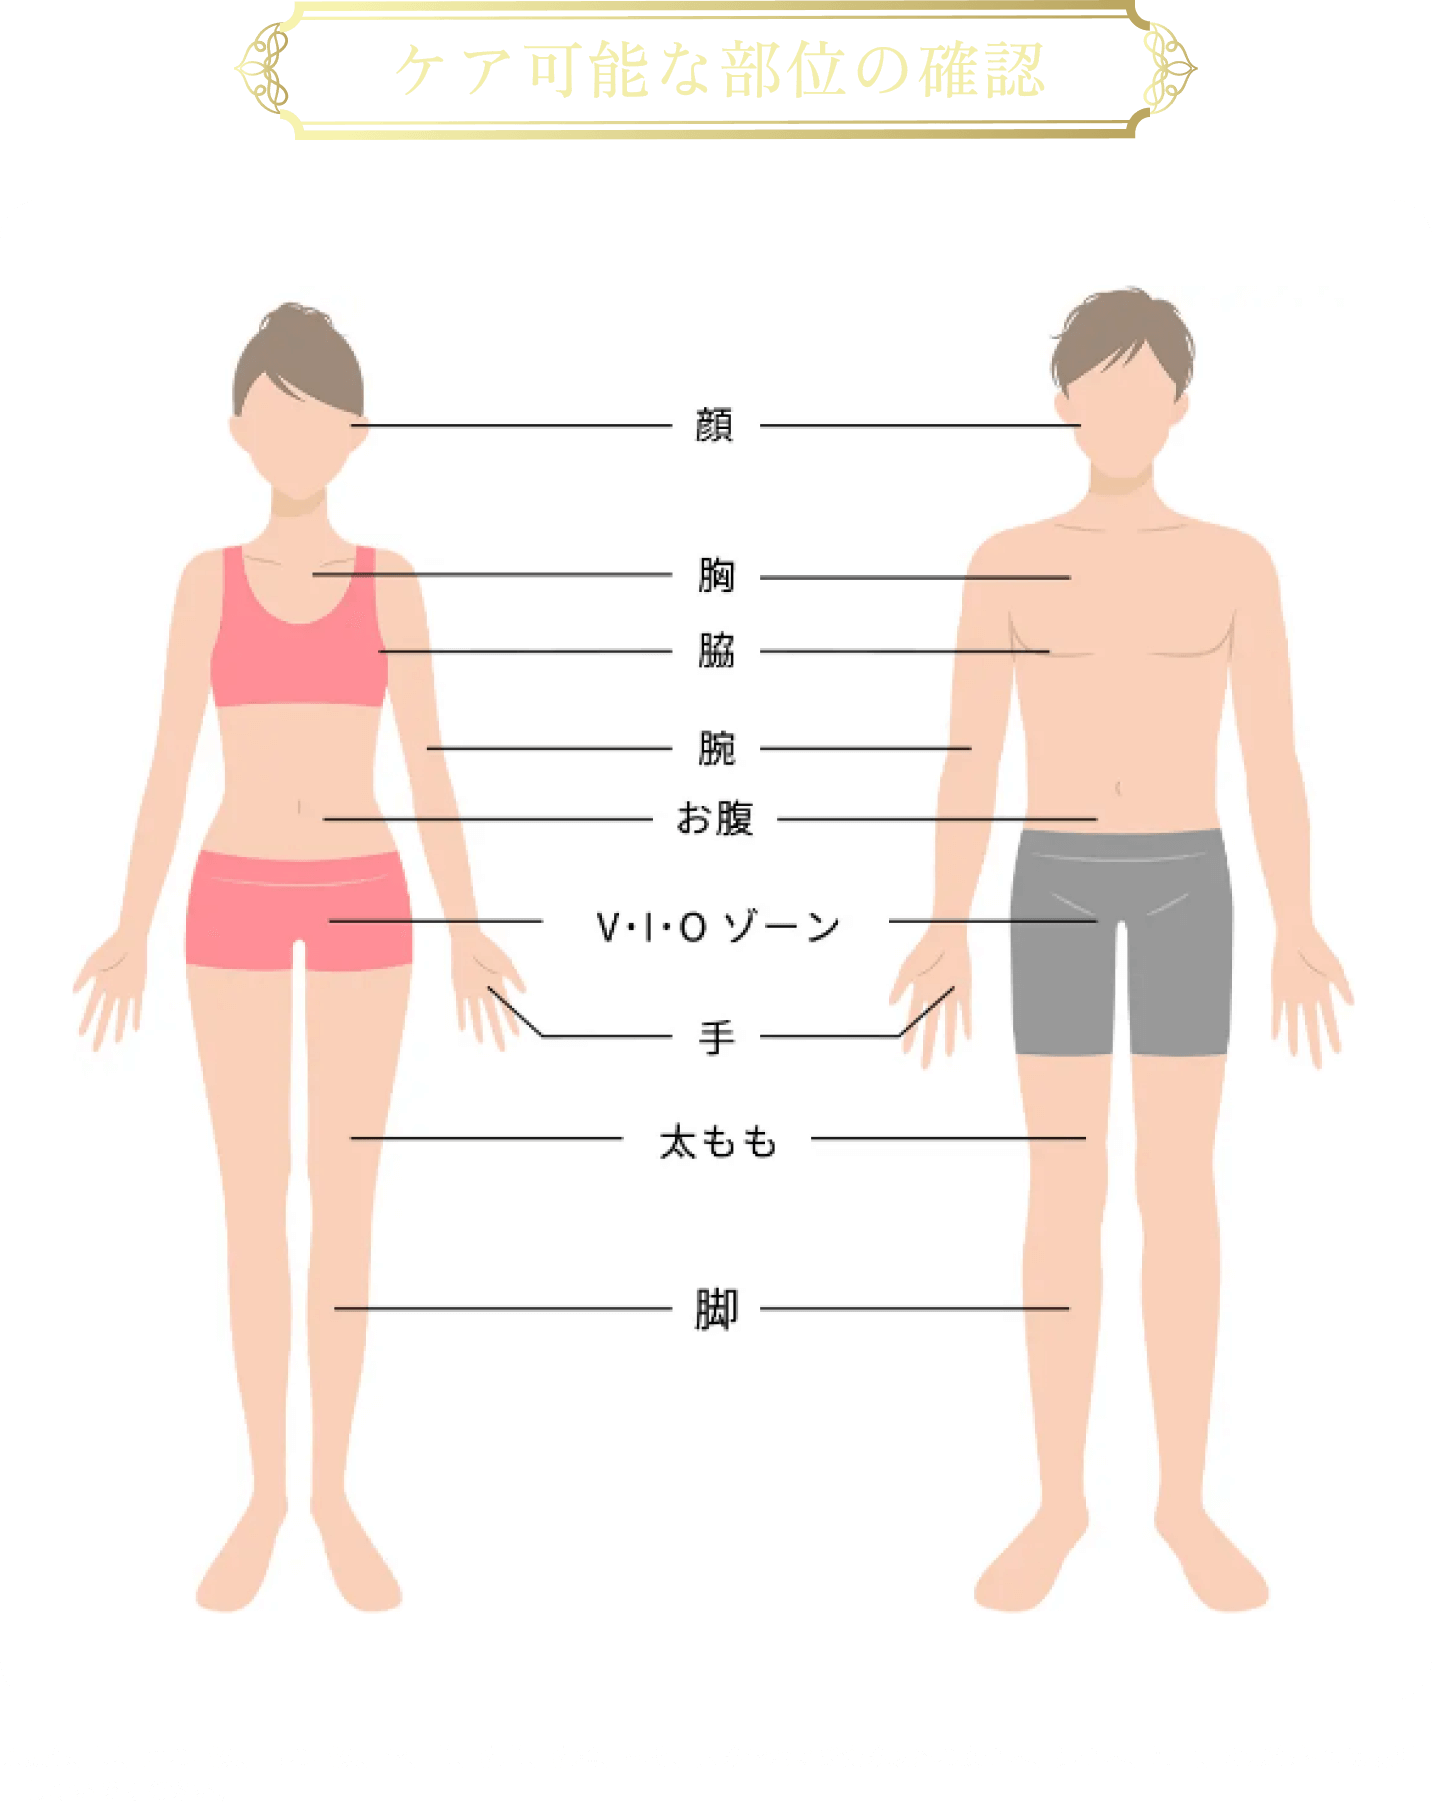 ケア可能な部位の確認　顔・胸・脇・腕・お腹・VIOゾーン・手・太もも・足　※頭部、耳、眉の周辺、目の周辺、唇、首、乳首、乳輪、へそ、大陰唇および会陰以外の女性器、男性器、肛門、粘膜部位には使用しないでください。